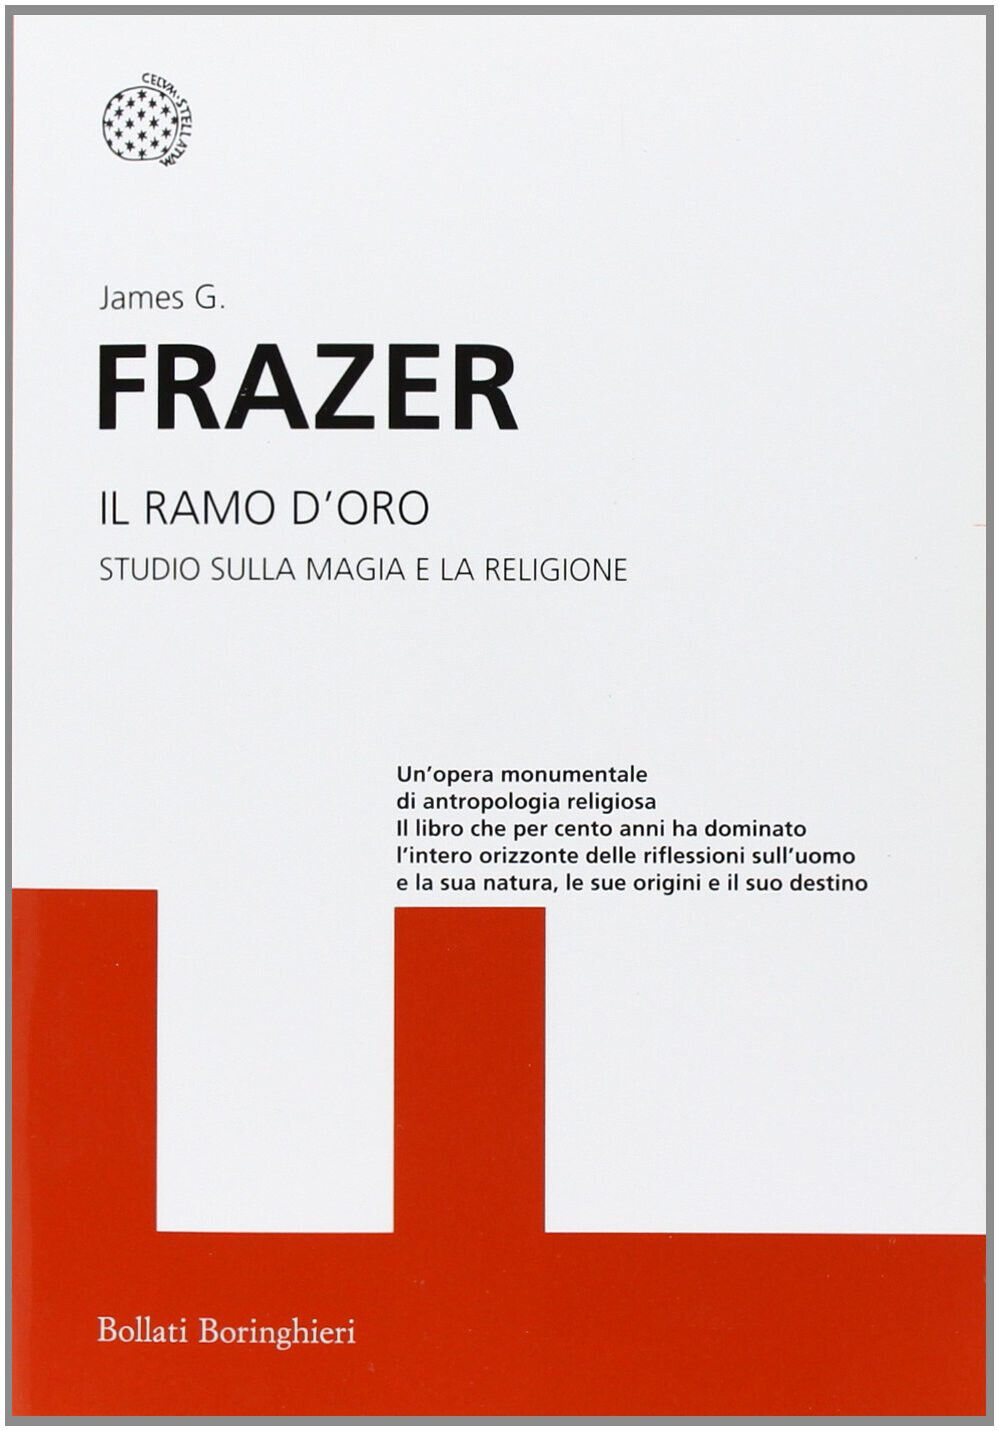 il ramo d'oro - James George Frazer - Bollati Boringhieri, 2012 libro usato